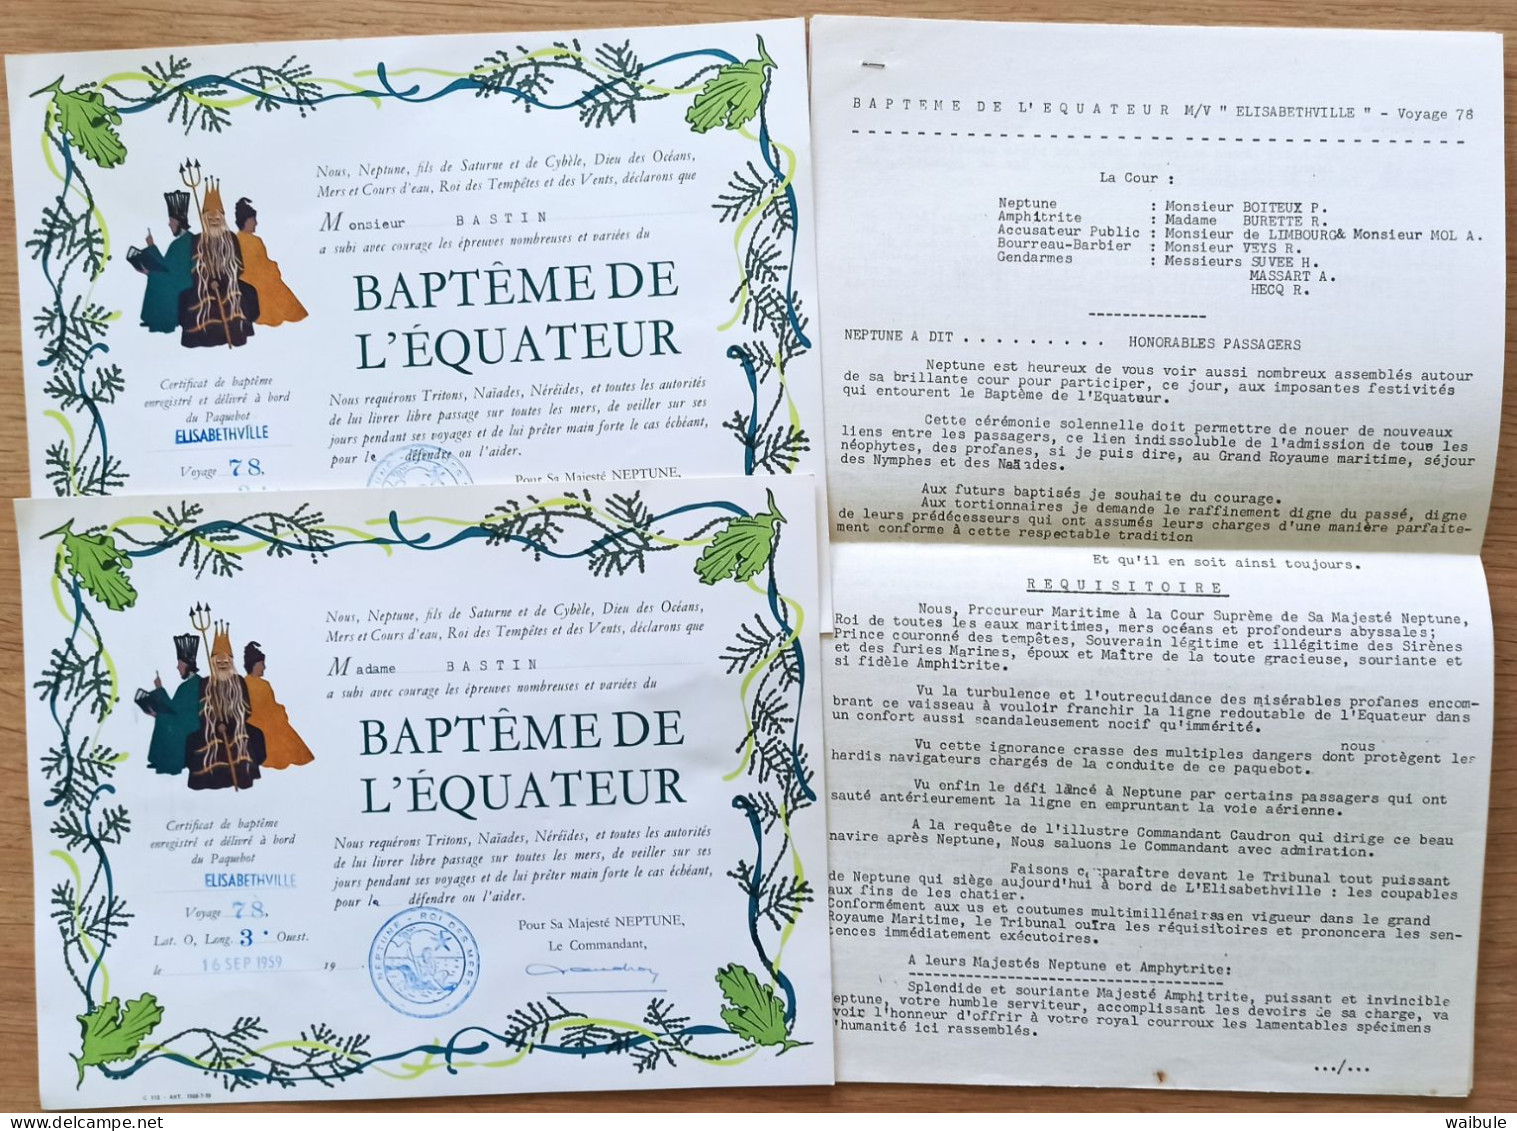 2" Baptême Equateur" + Discours De 5 Pages Bateau Compagnie Maritime Belge Navire Elisabethville Voyage 78 Sept.59 - Diploma & School Reports